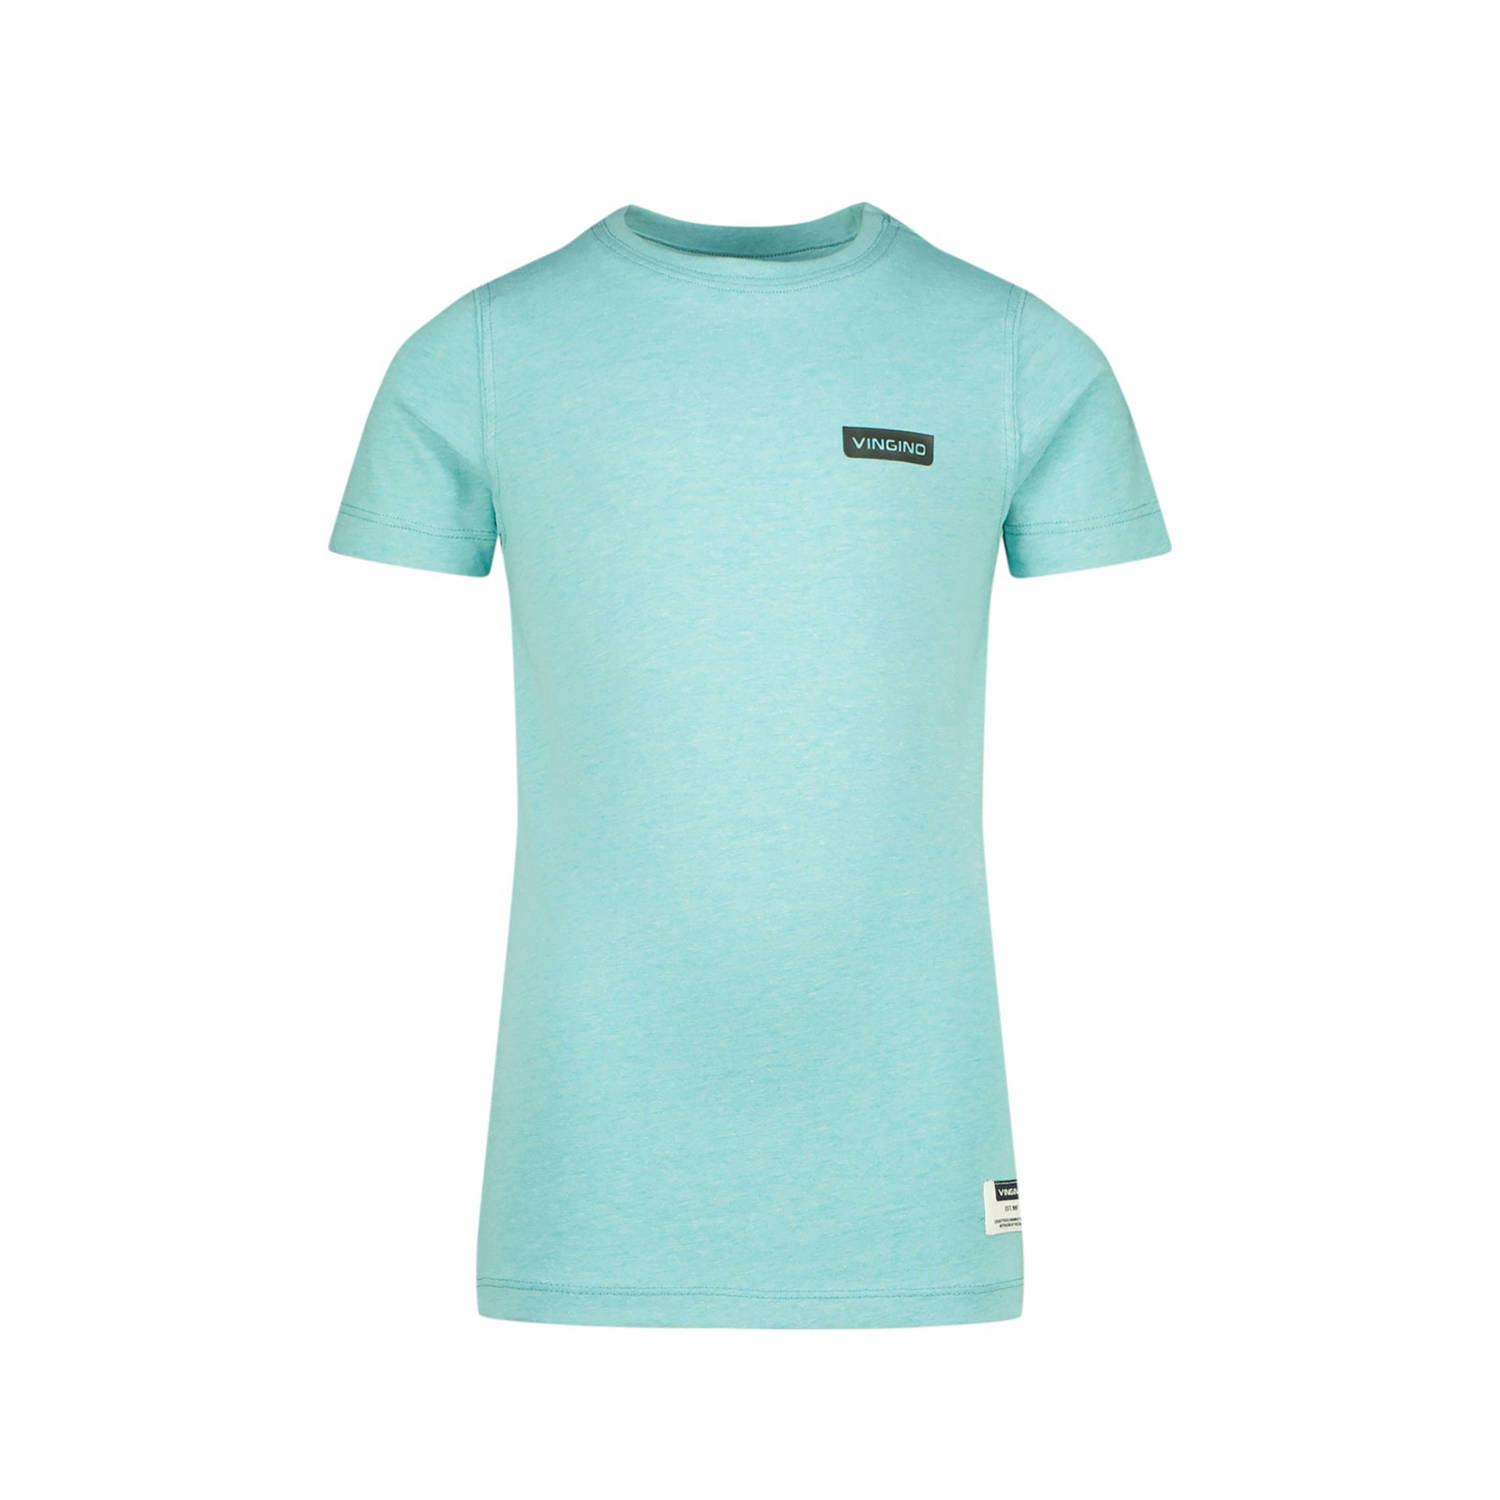 Vingino T-shirt aquablauw